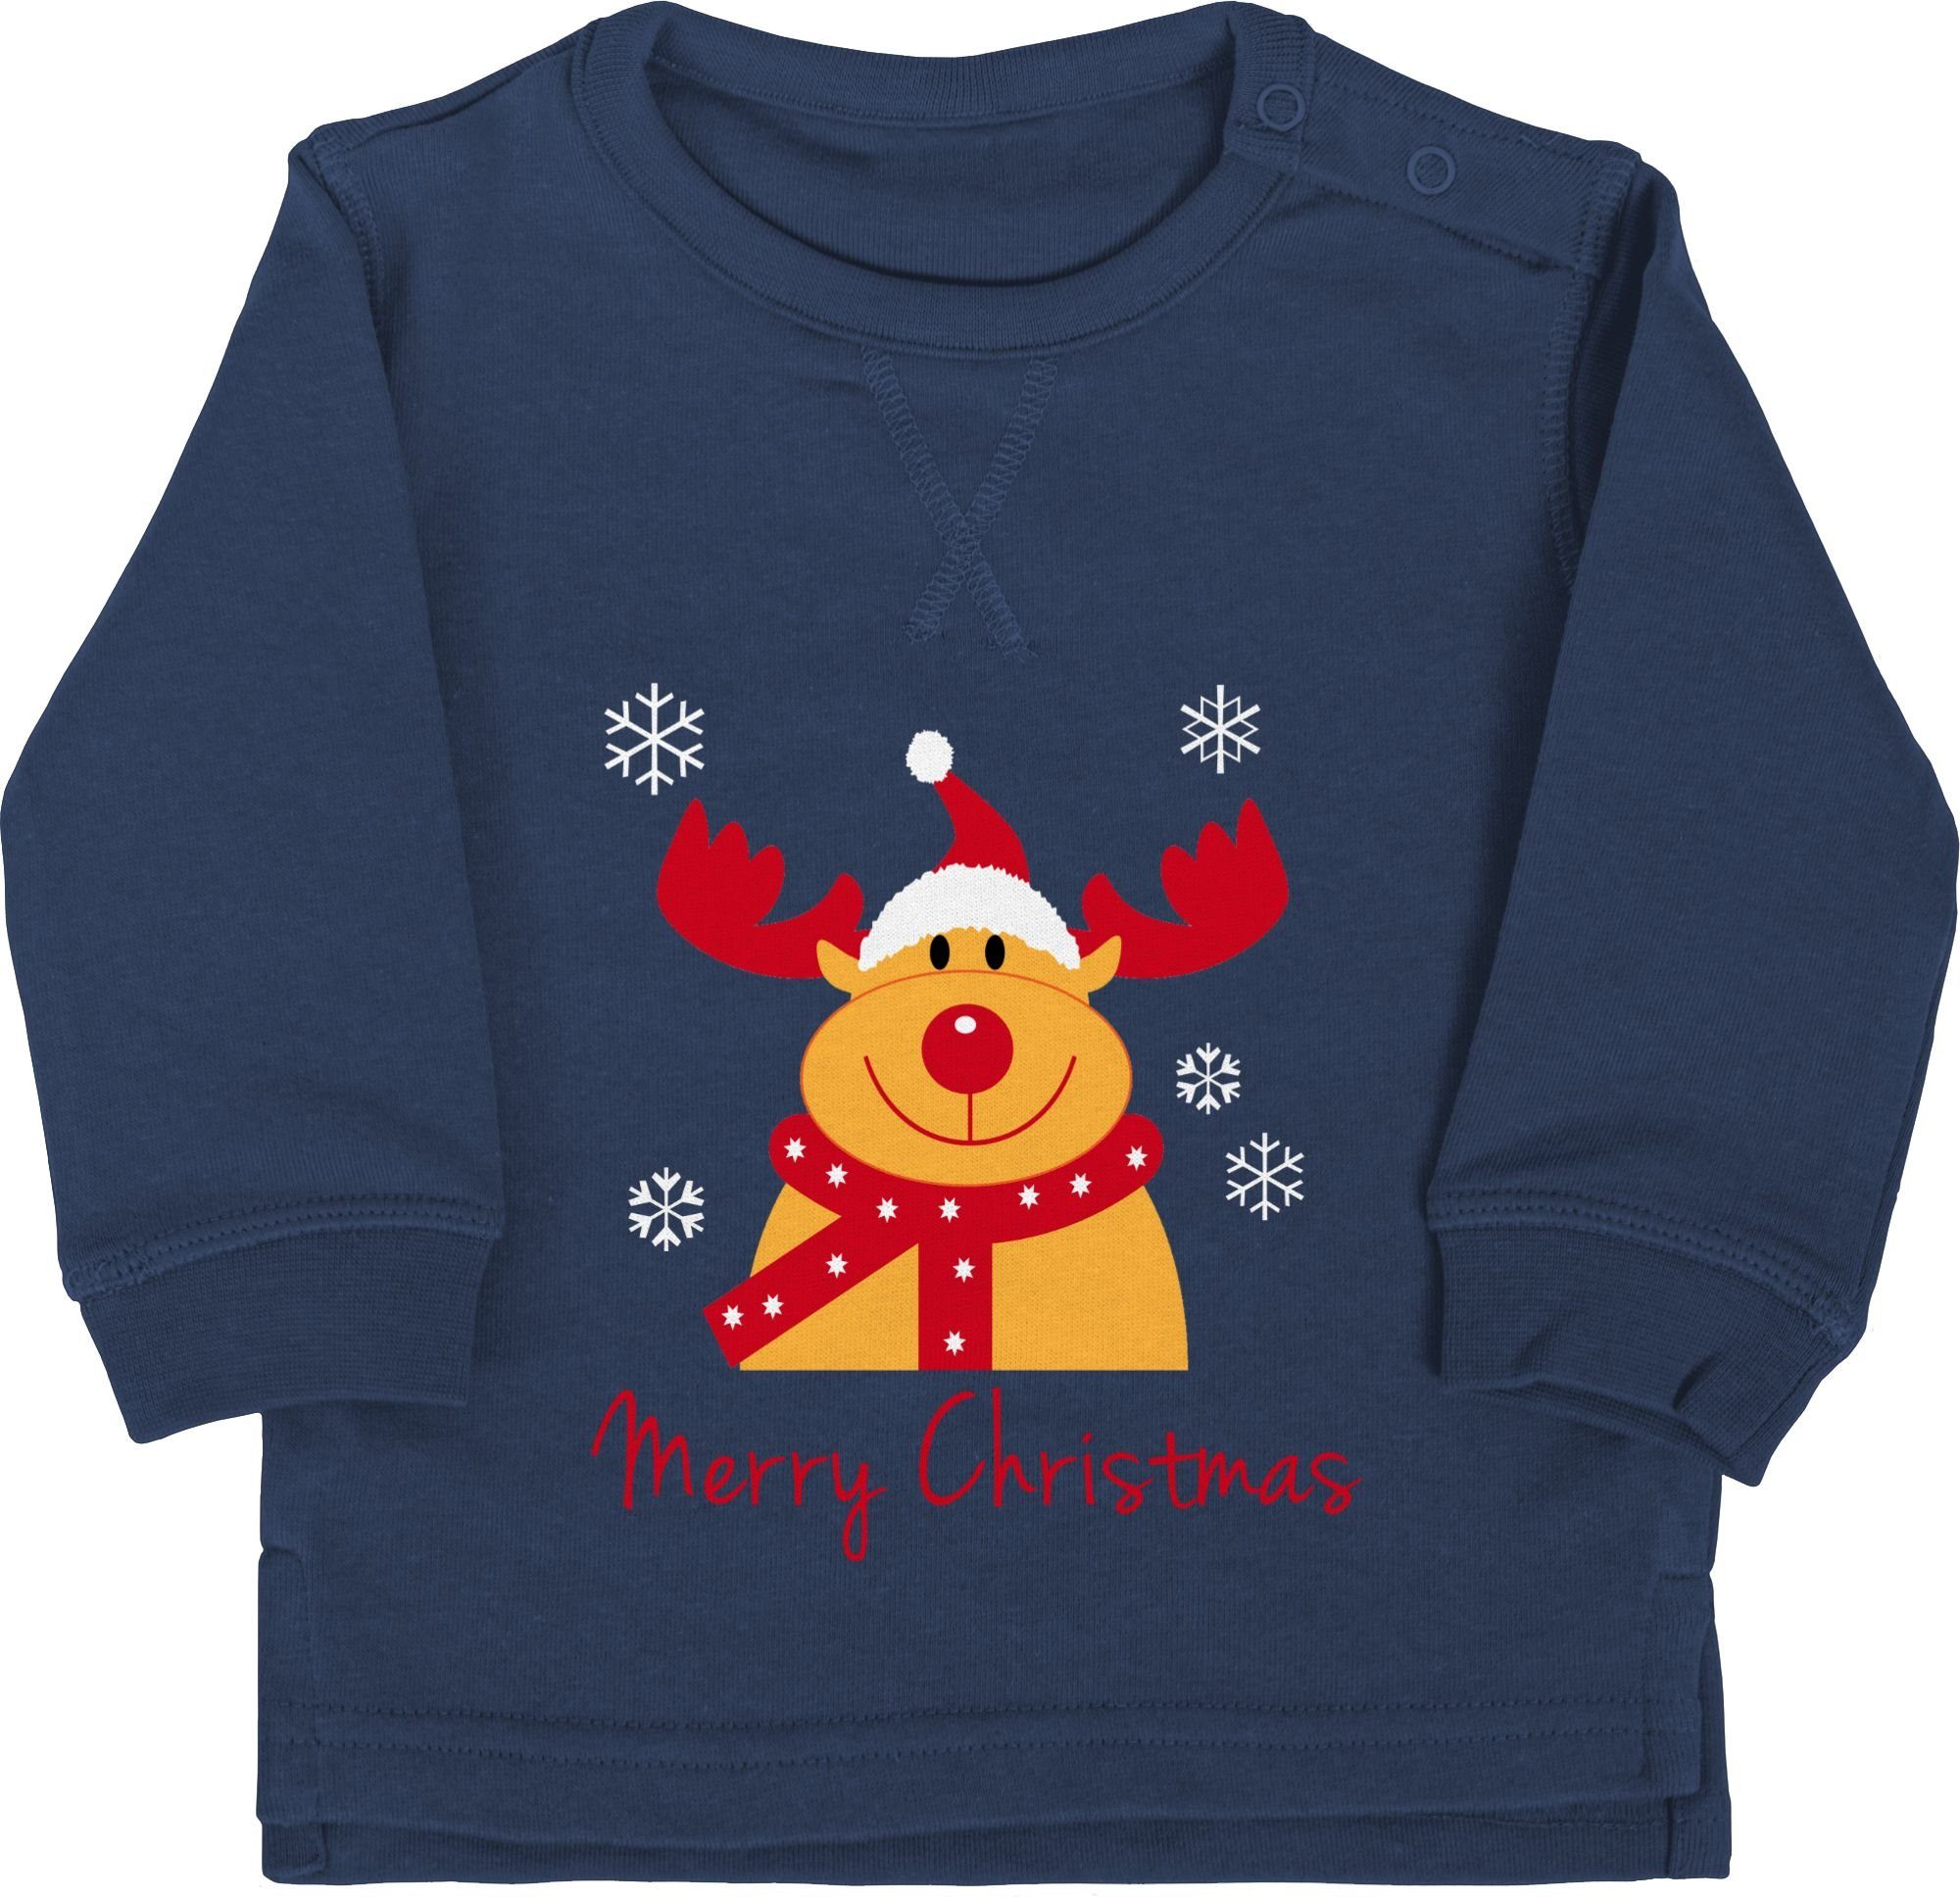 Shirtracer Sweatshirt Merry Christmas Rentier Weihnachten Kleidung Baby 1 Navy Blau